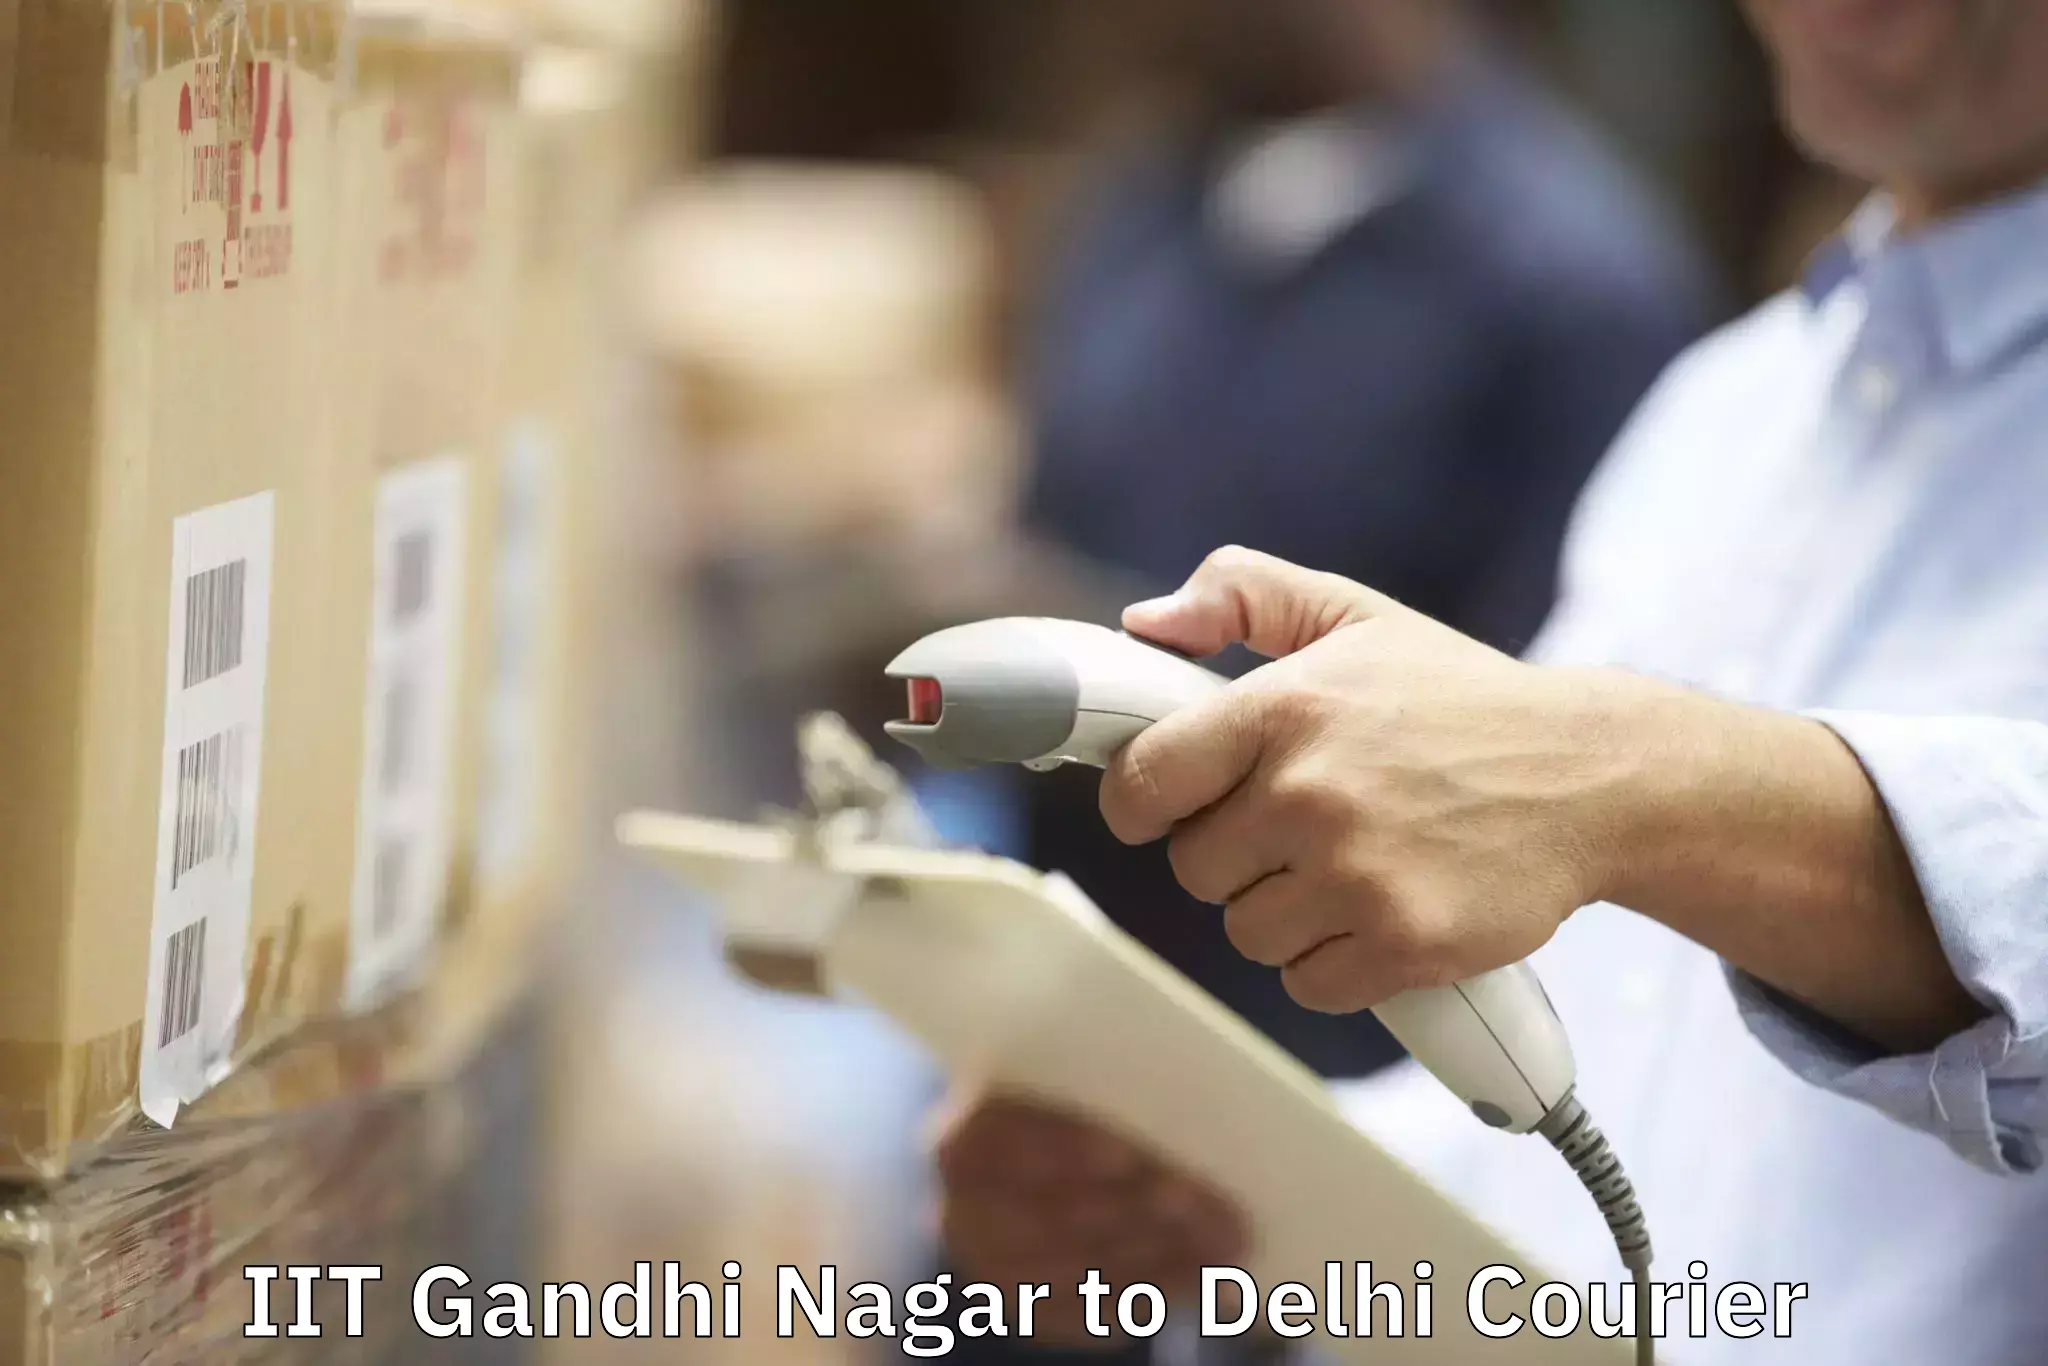 Professional furniture movers IIT Gandhi Nagar to NCR